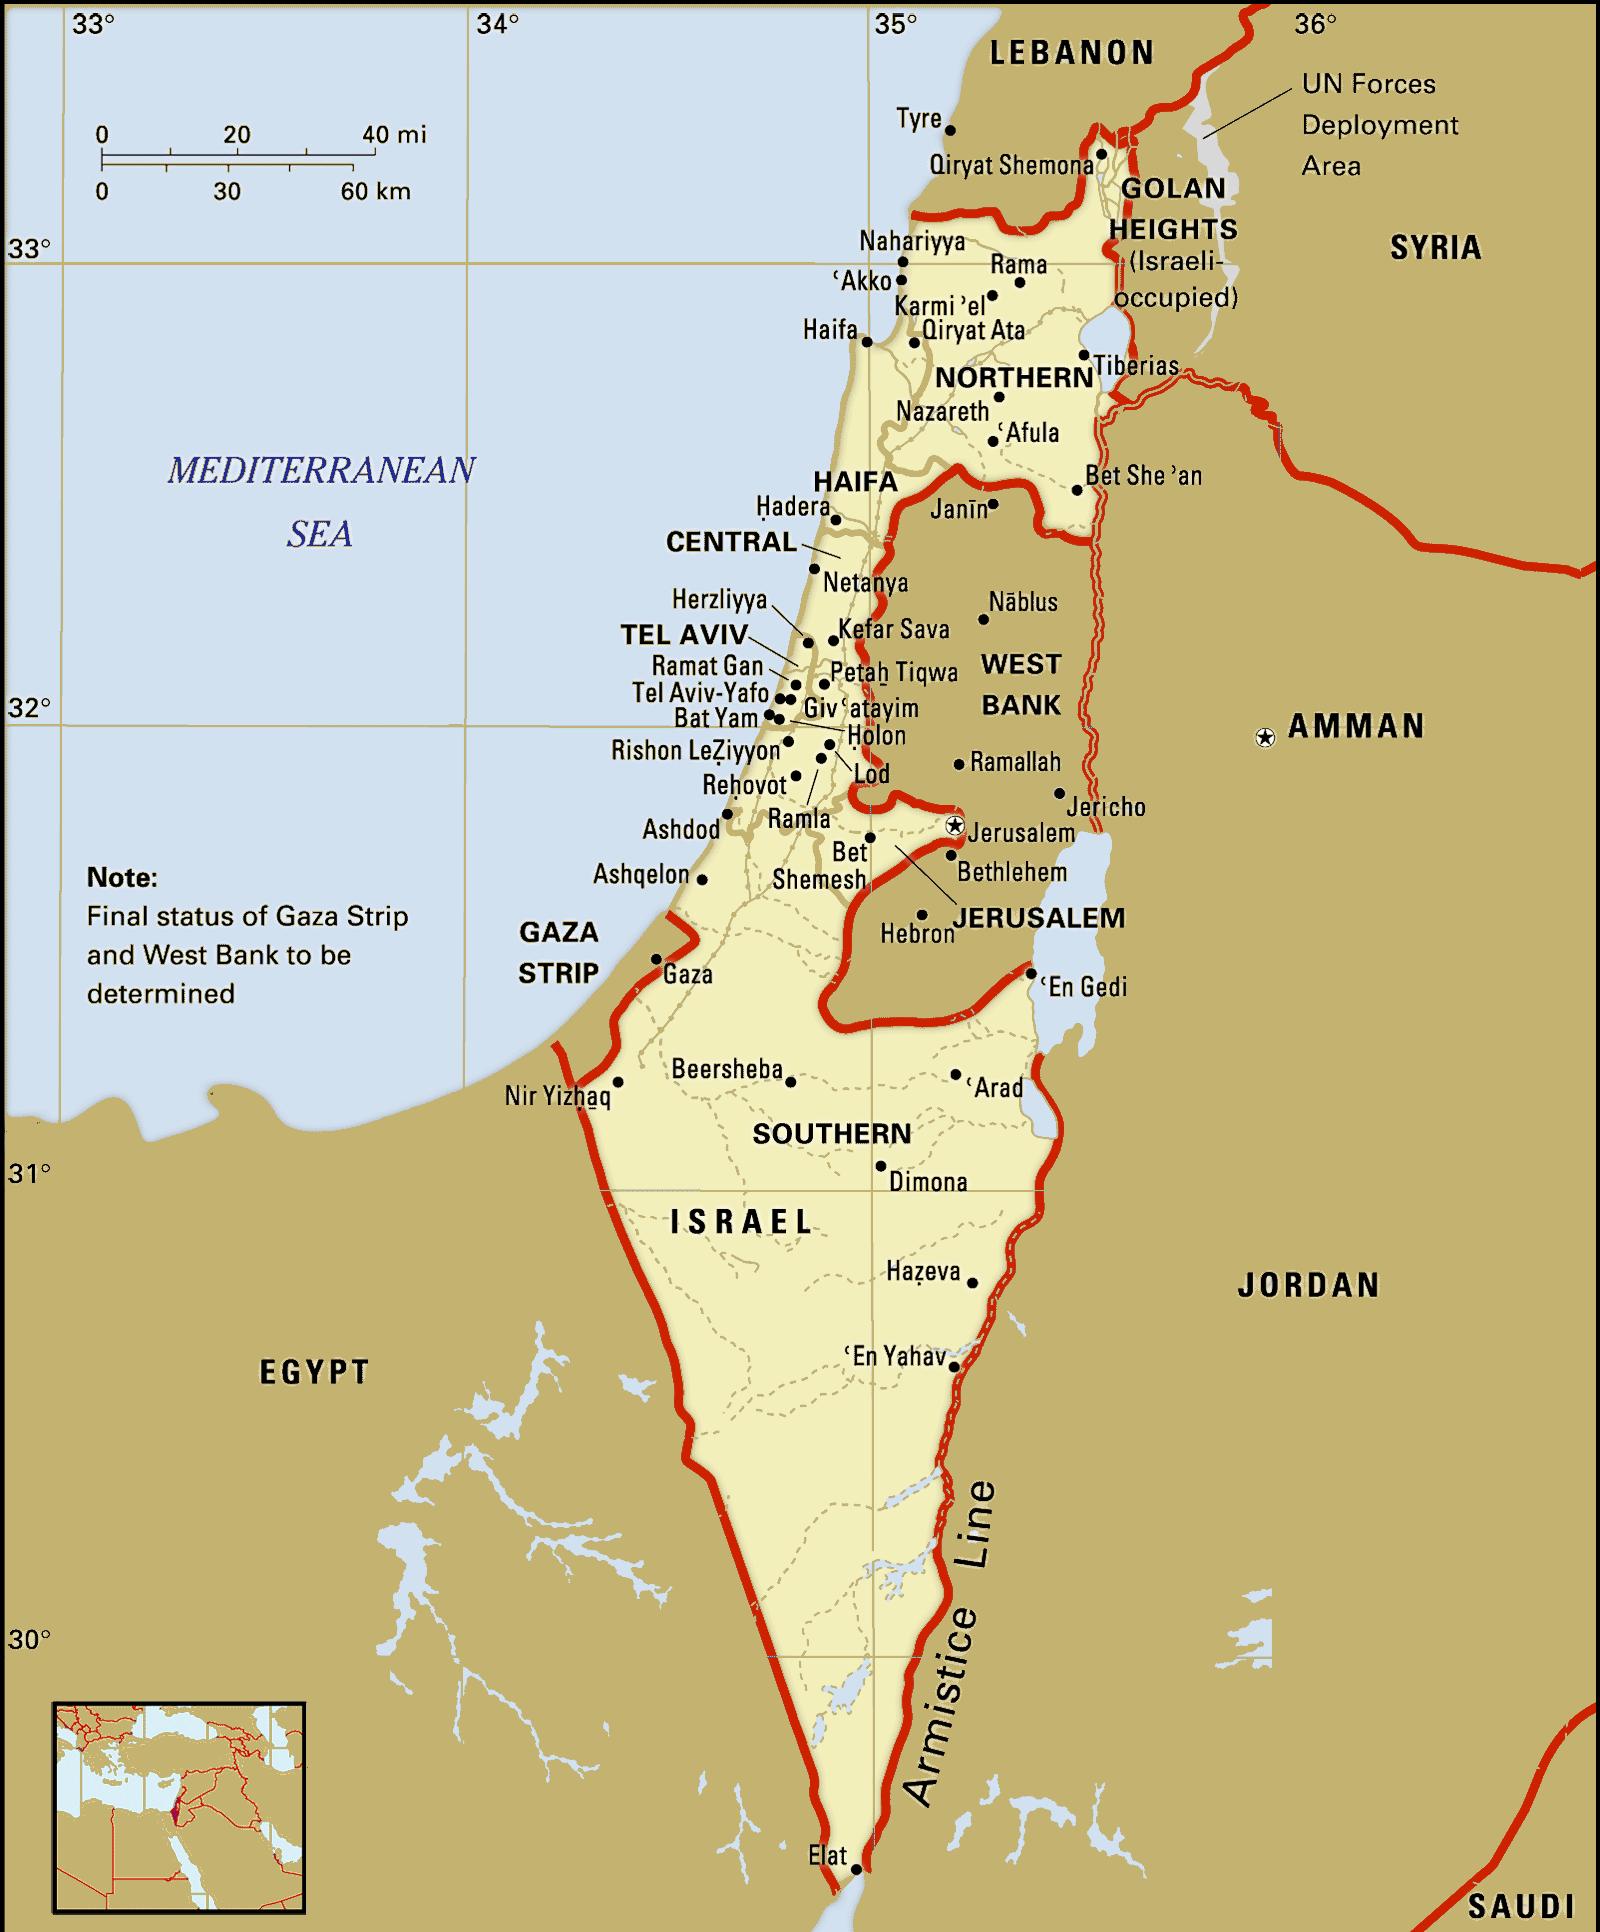 Mapa Del Estado De Israel Mapas Mapamapas Mapa Images